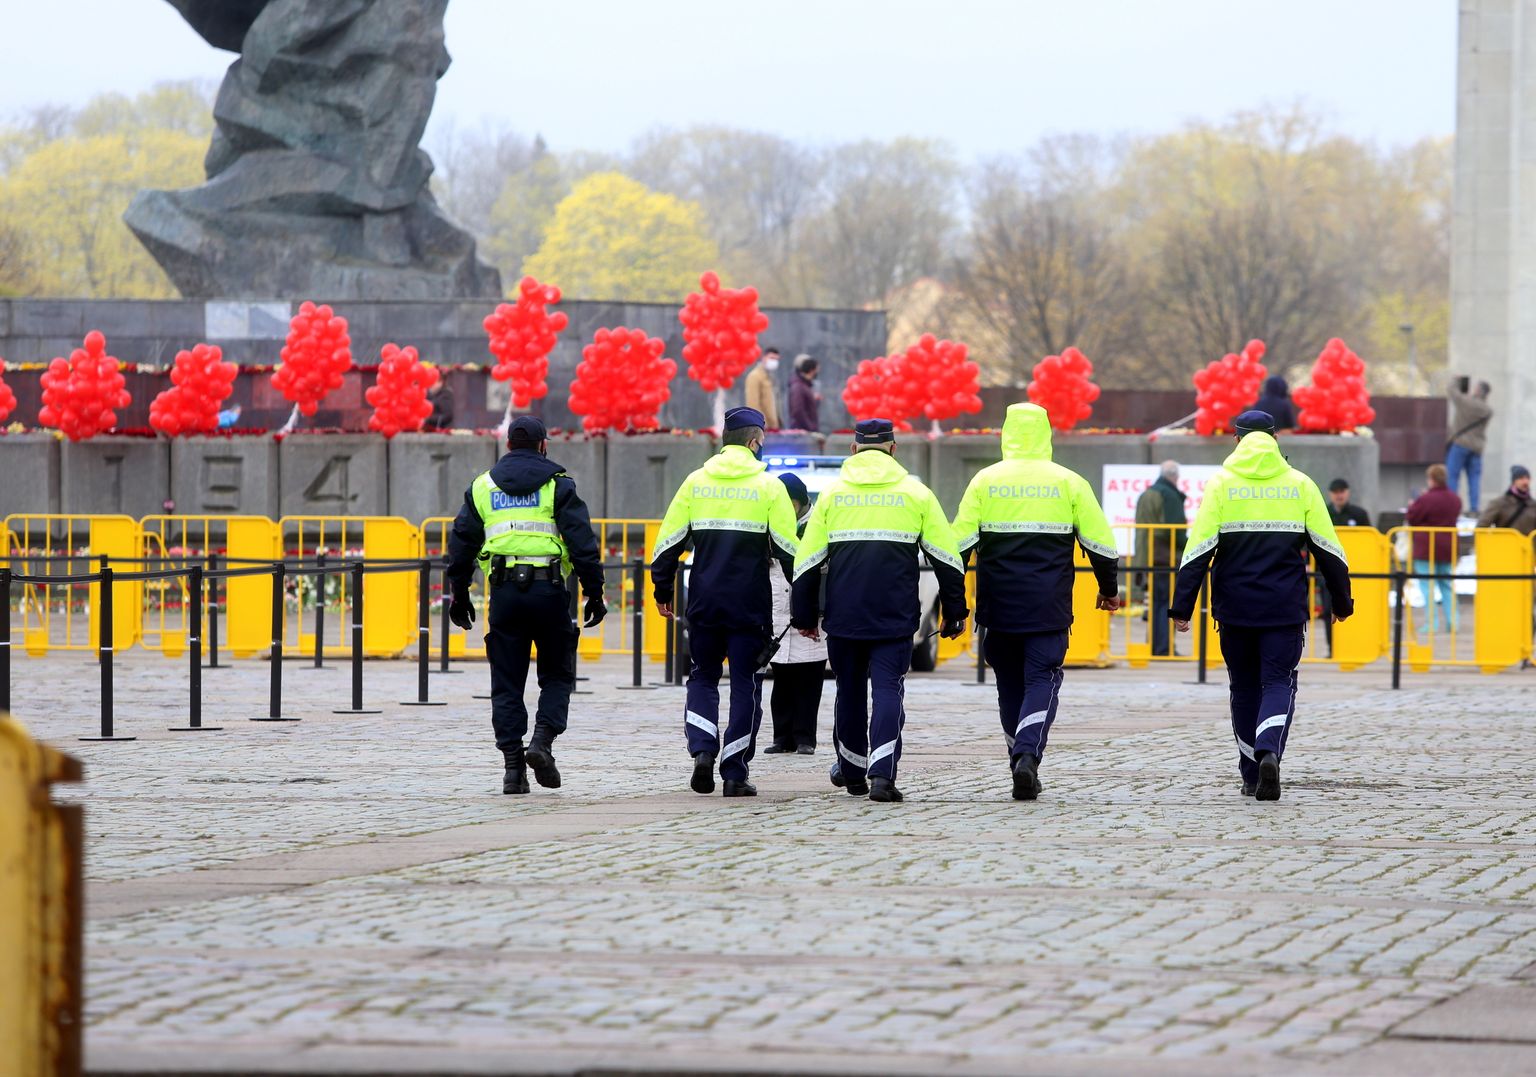 Valsts policijas dabinieki pie pieminekļa "Padomju Latvijas un Rīgas atbrīvotājiem no nacistiskajiem iebrucējiem" Otrā pasaules kara piemiņas pasākumā Uzvaras parkā.